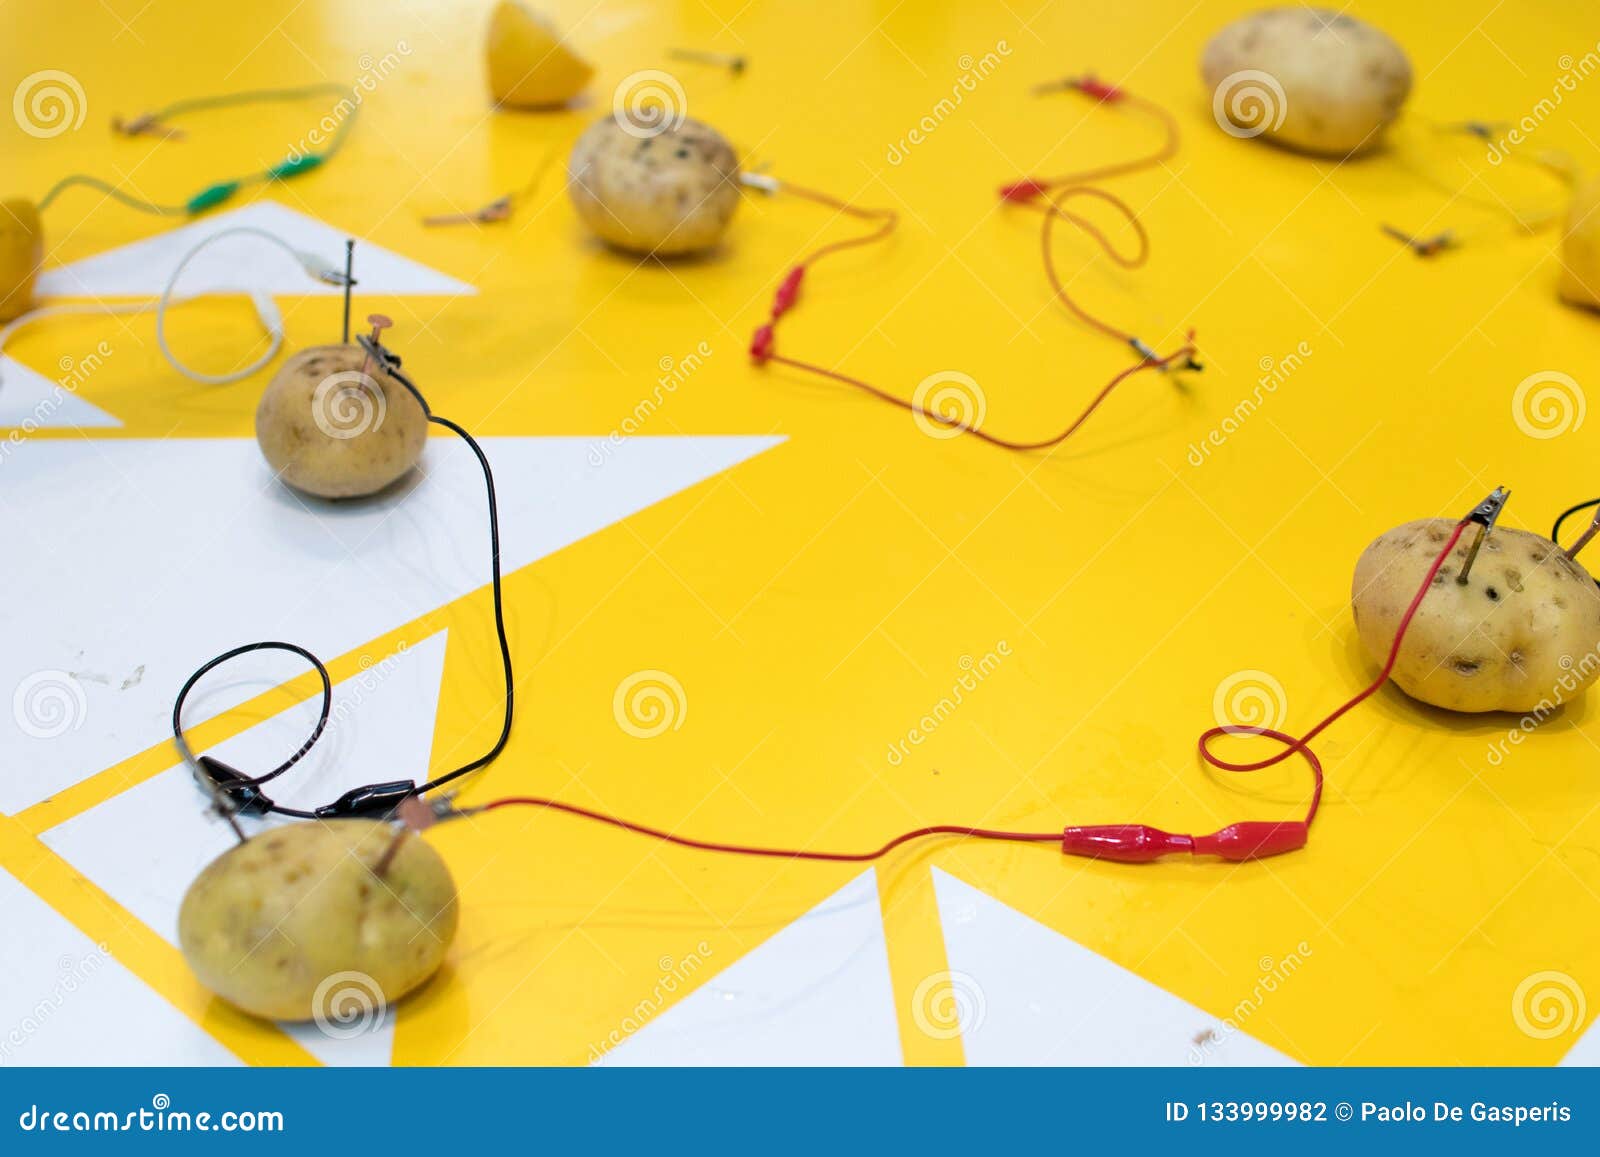 Δραστηριότητα ΜΙΣΧΩΝ μπαταριών πατατών με τις πατάτες, λεμόνια, σαν  αλλιγάτορας CL Στοκ Εικόνες - εικόνα από : 133999982